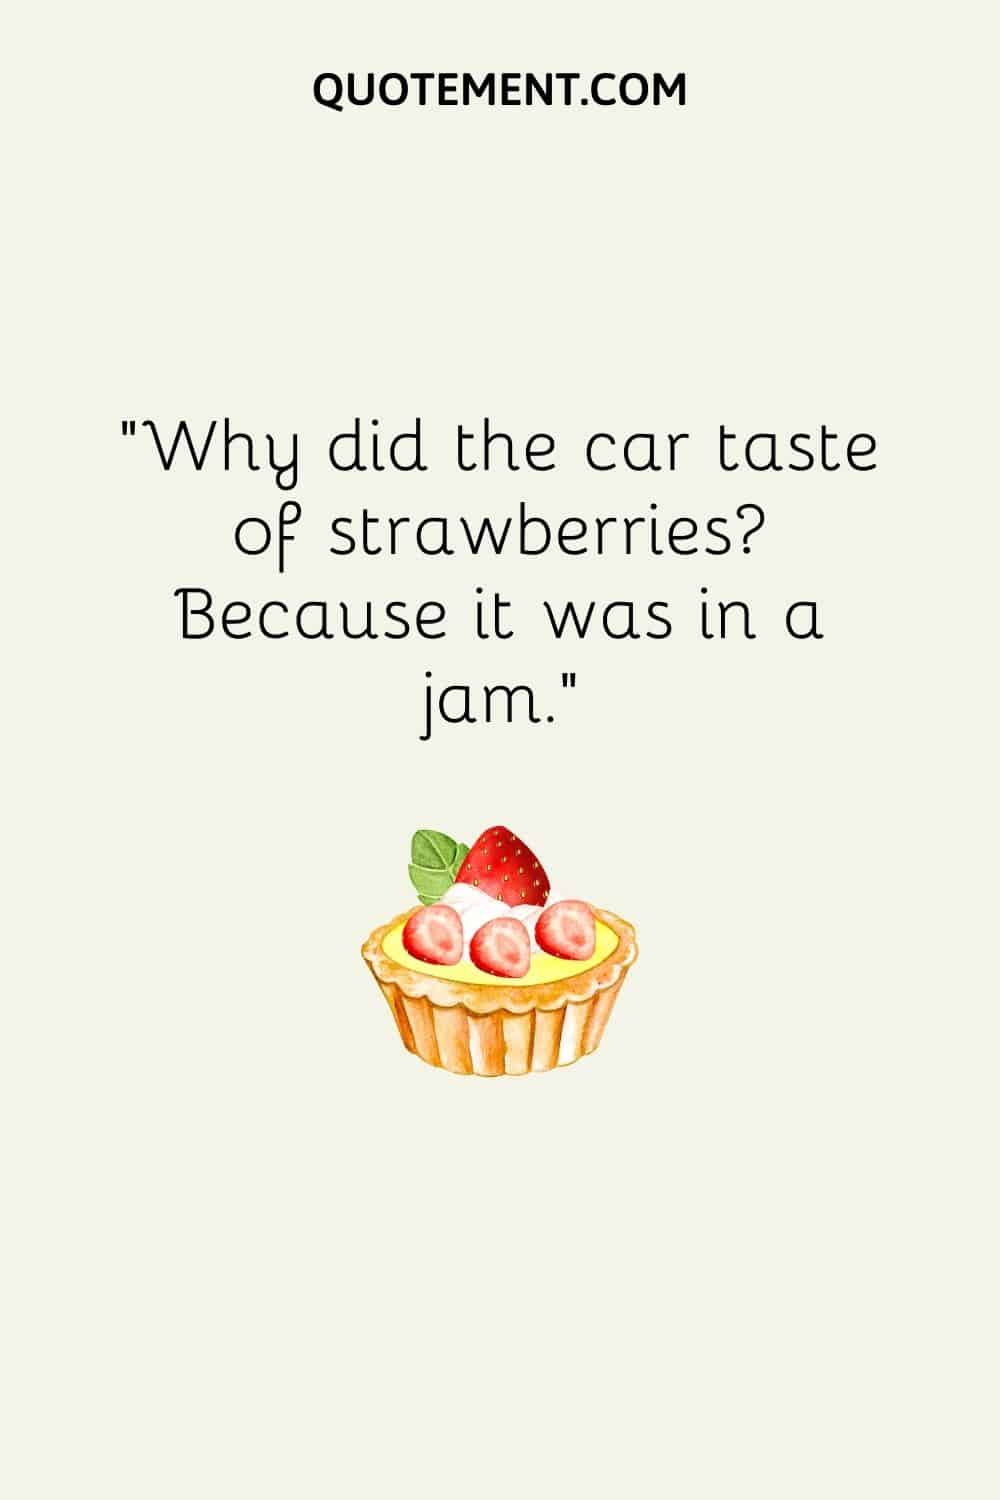 Por qué el coche sabía a fresas Porque estaba en una mermelada